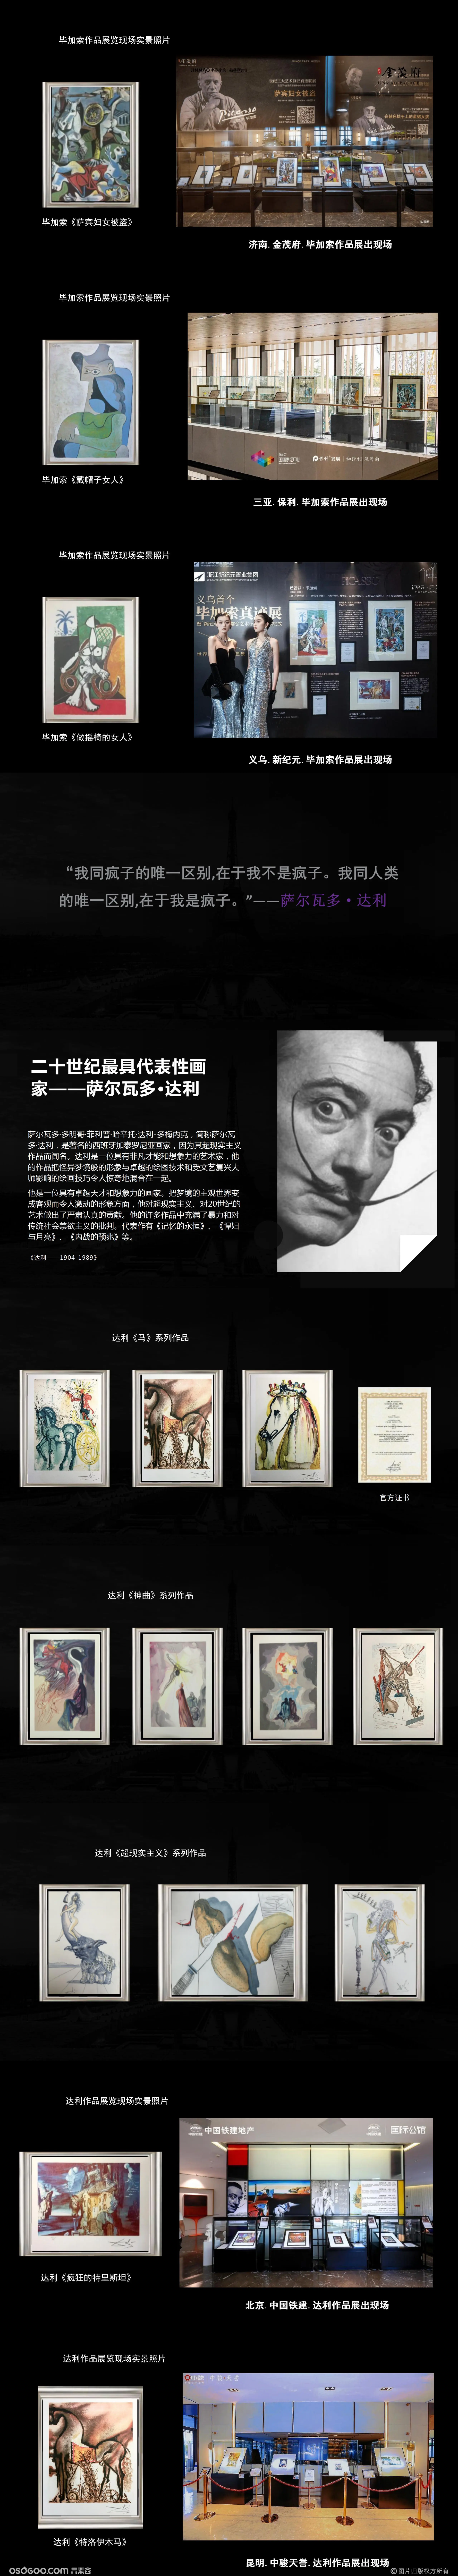 20世纪艺术三杰.毕加索.达利.马蒂斯真迹展